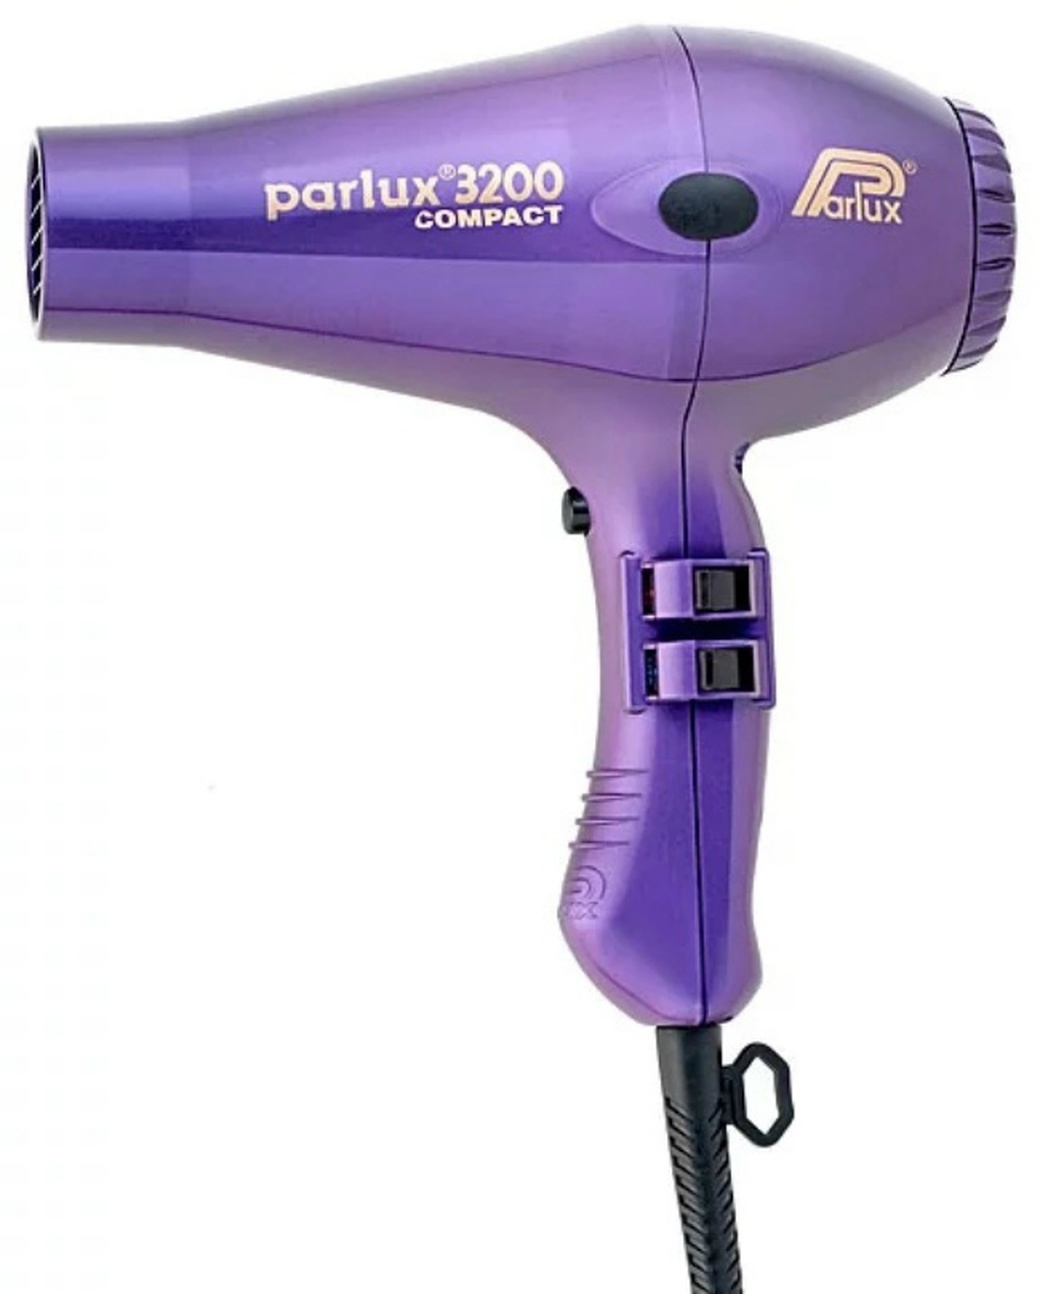 Фен Parlux 3200 Compact, 1900 Вт, 2 насадки, фиолетовый фото